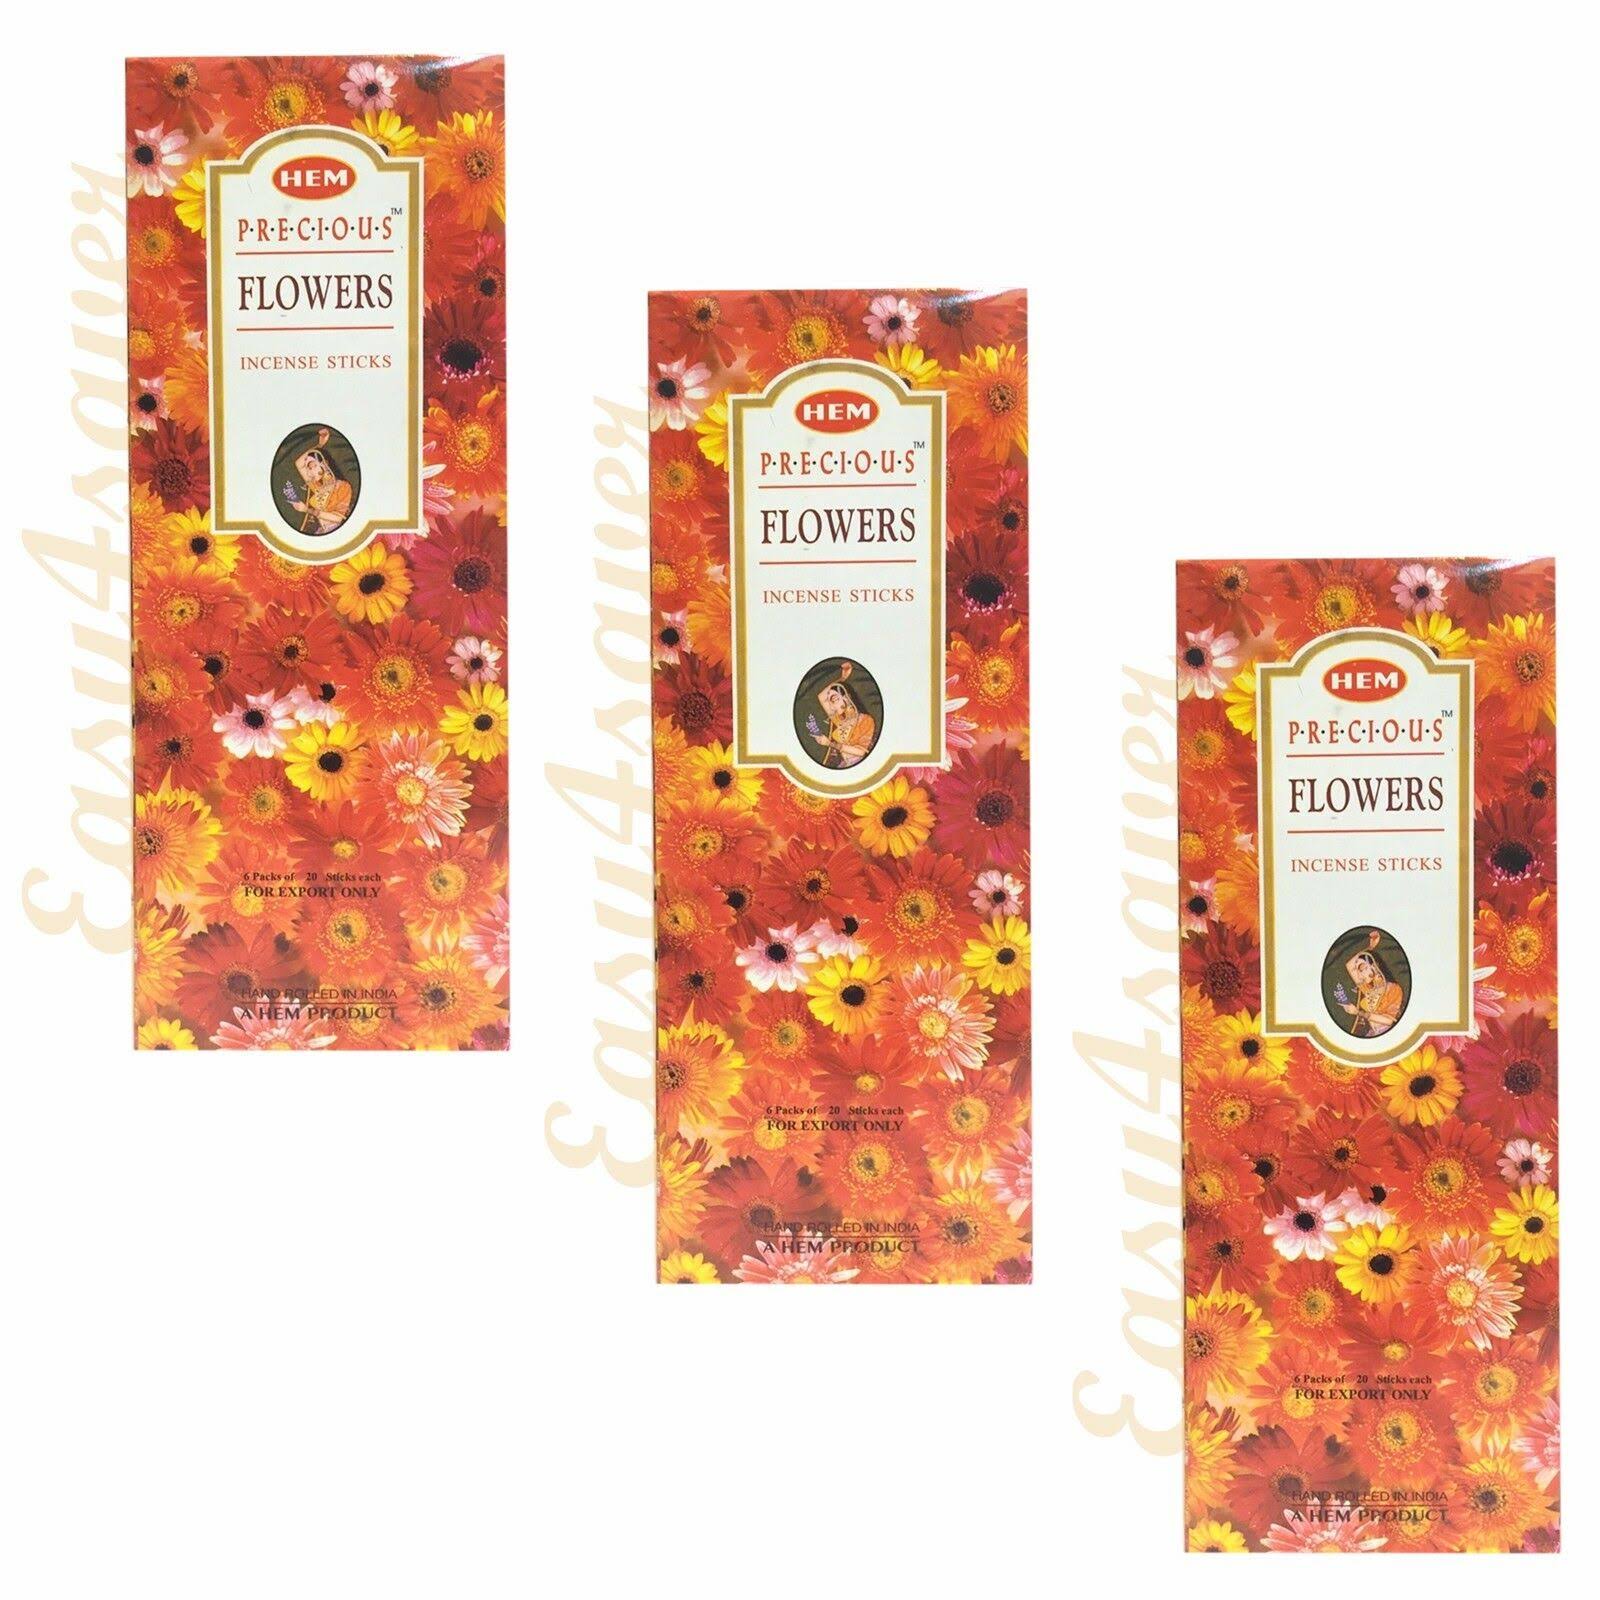 Hem Precious Flower Incense Sticks Pack of 3 (60 Sticks) - 001657